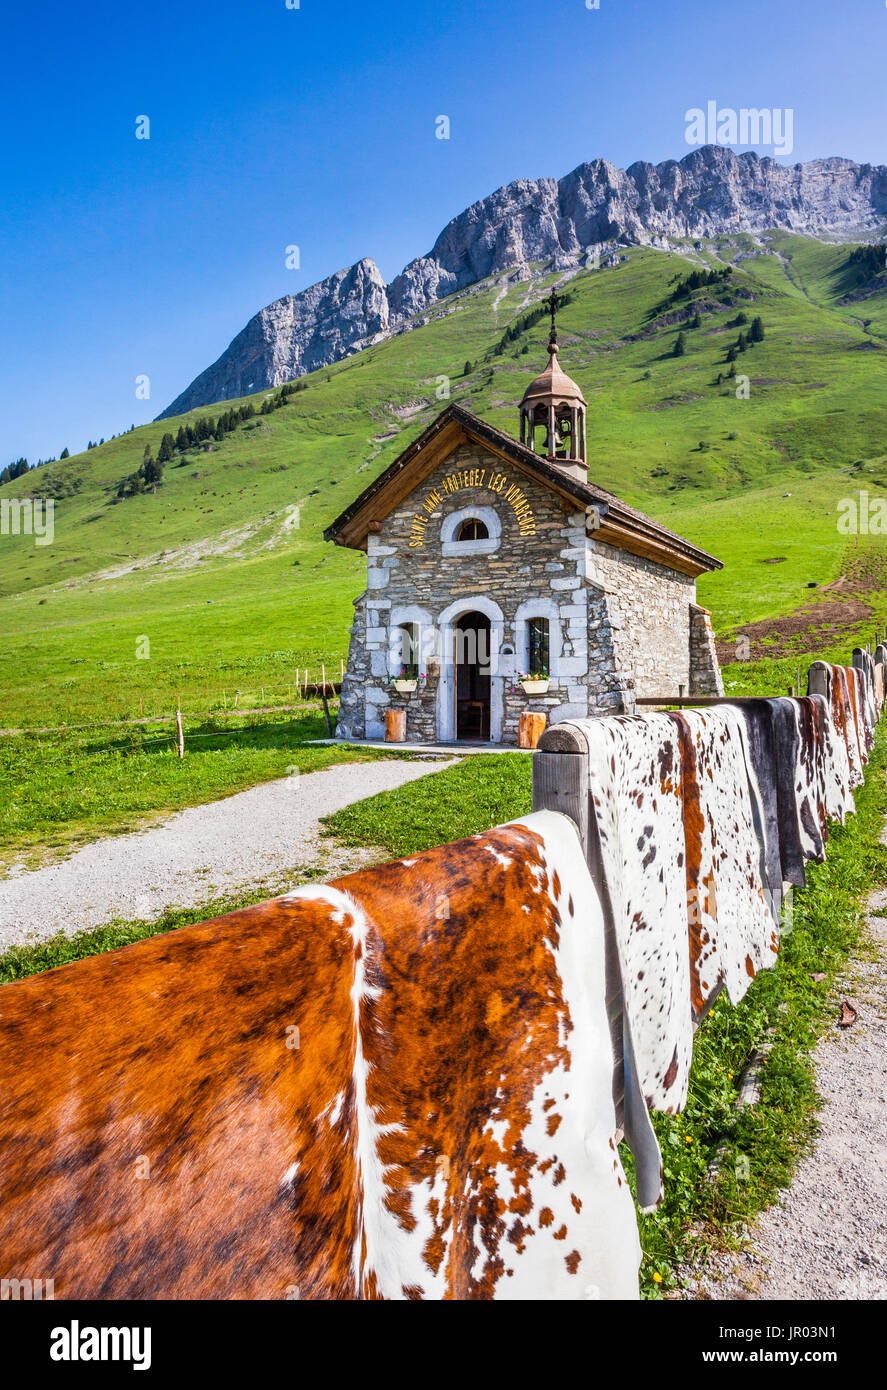 Francia, Haute-Savoie/Savoie, sulle Alpi francesi, mucca nascondere la vendita presso il Col de Aravis mountain pass con la vista della cappella Aravis Foto Stock